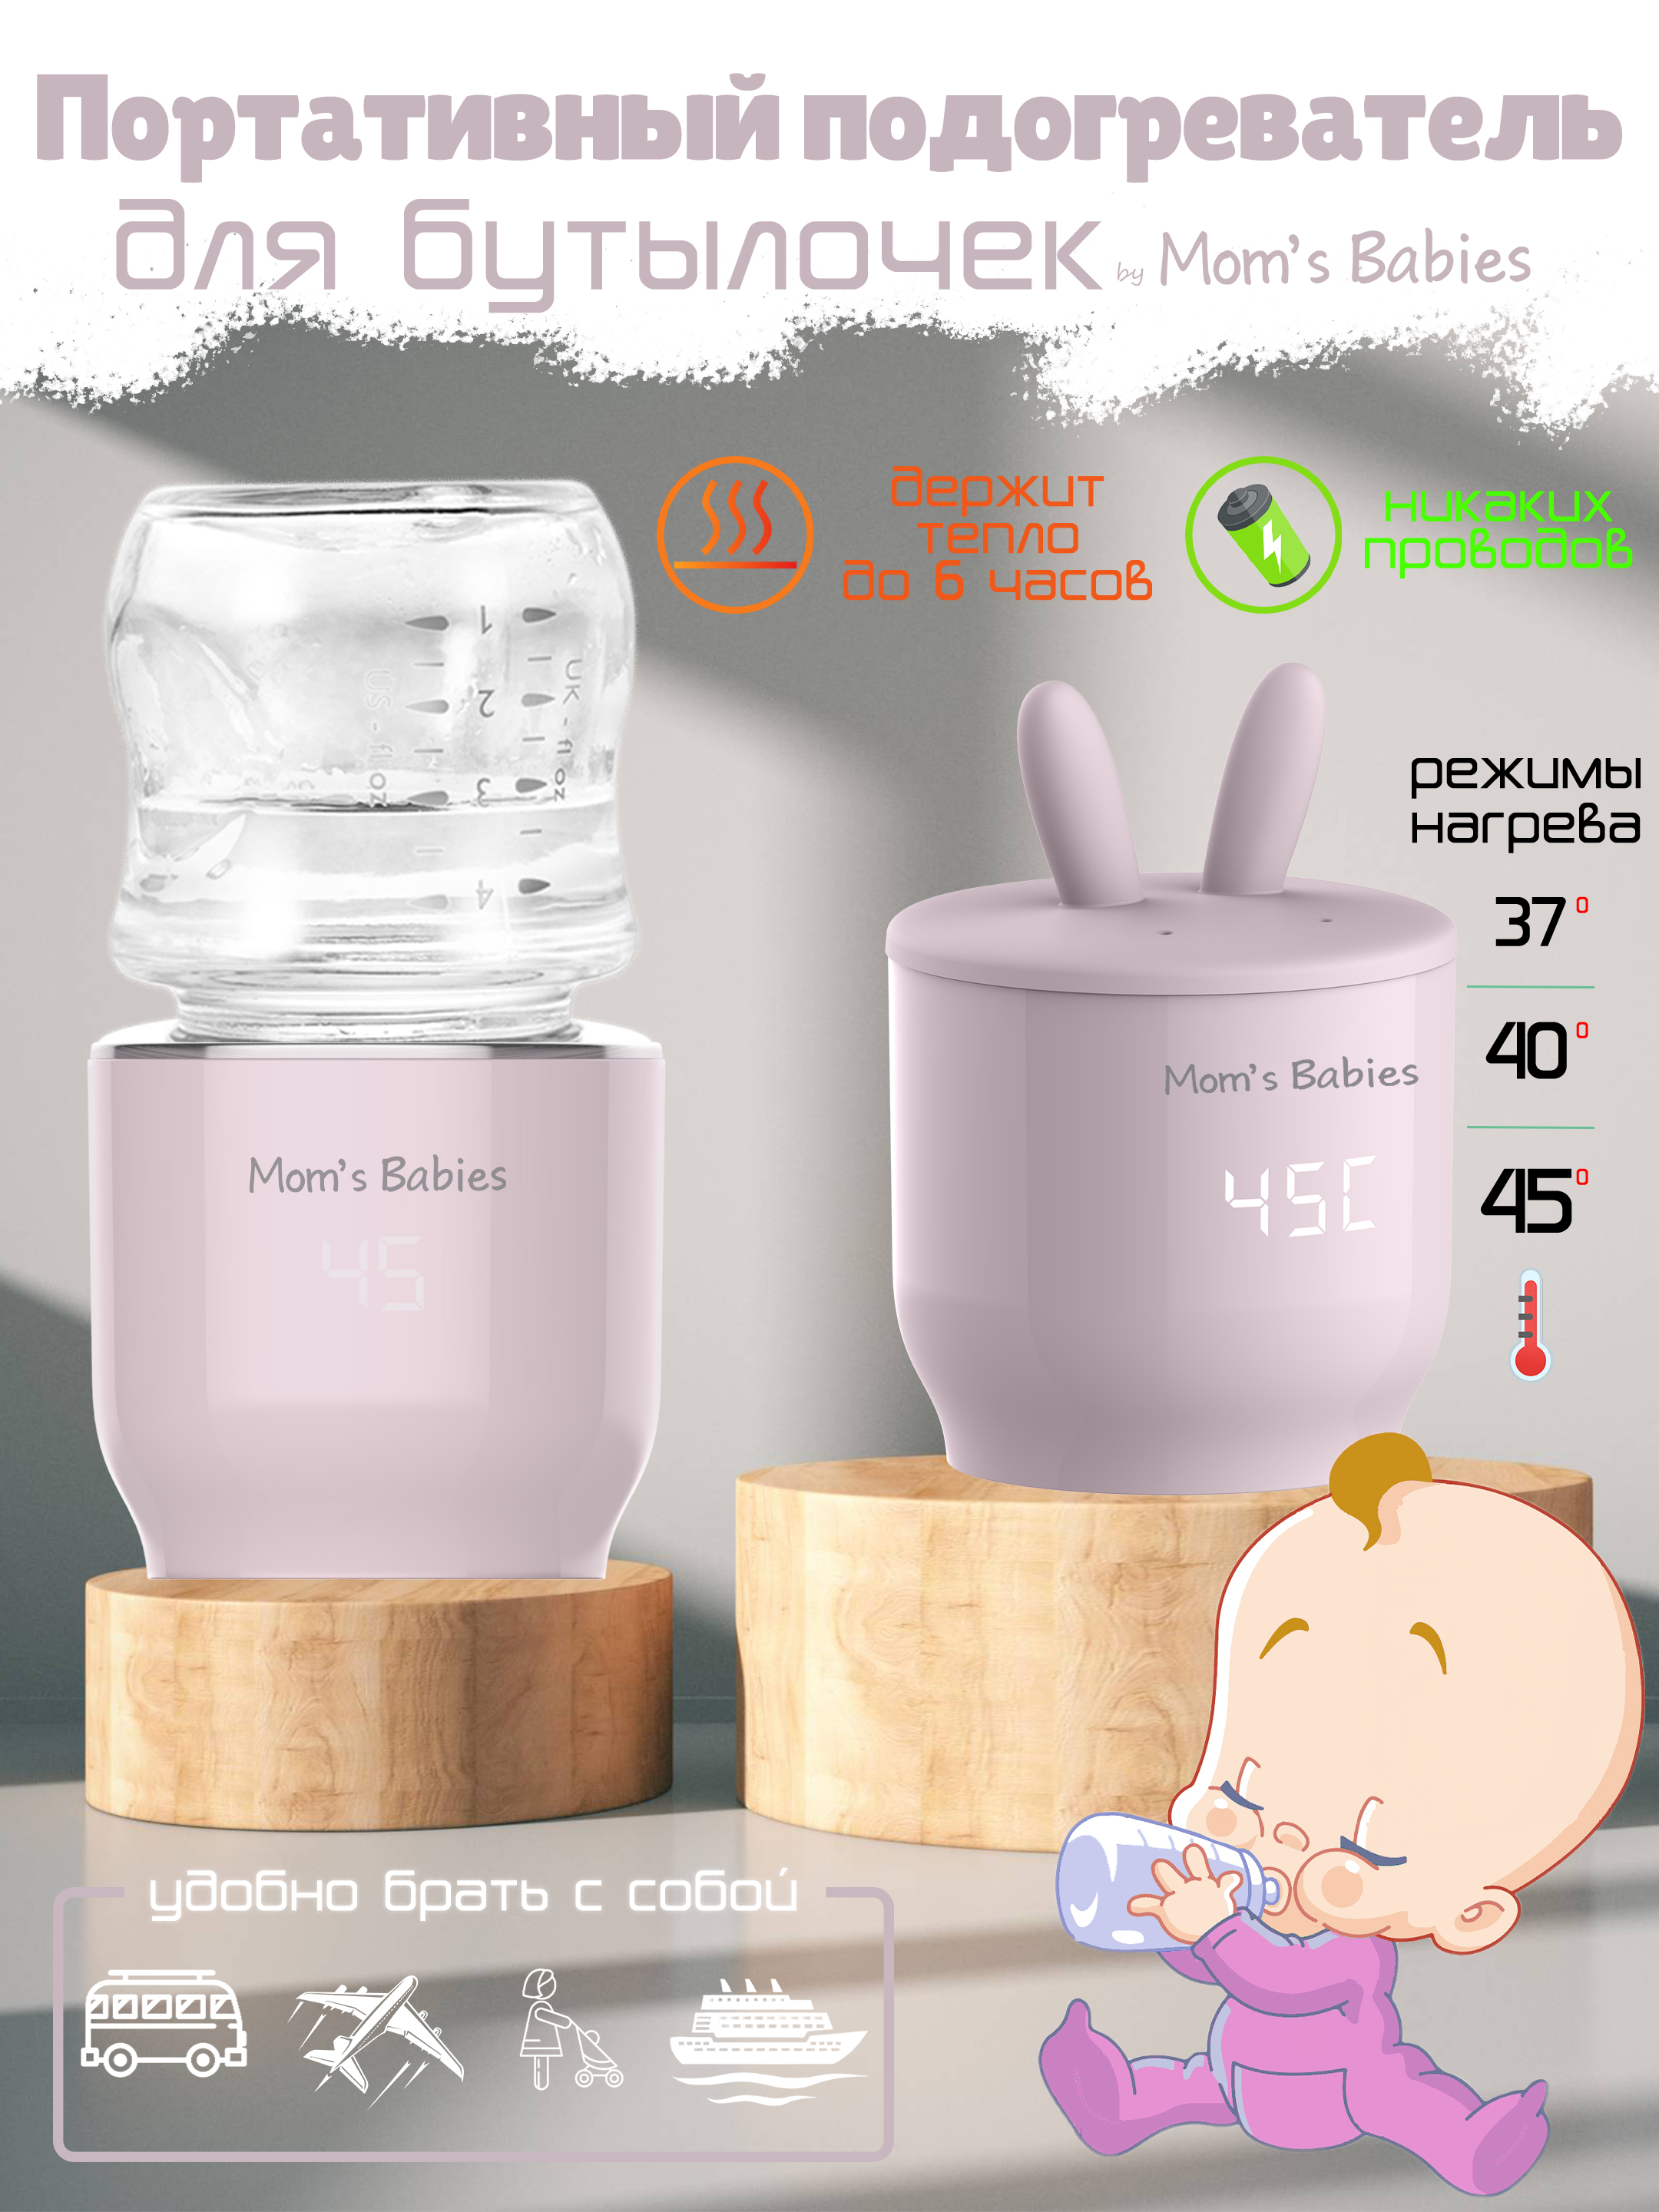 Портативный подогреватель Mom's Babies FS01 для бутылочек и детского питания розовый портативный подогреватель solmax w97201 для бутылочек и детского питания белый